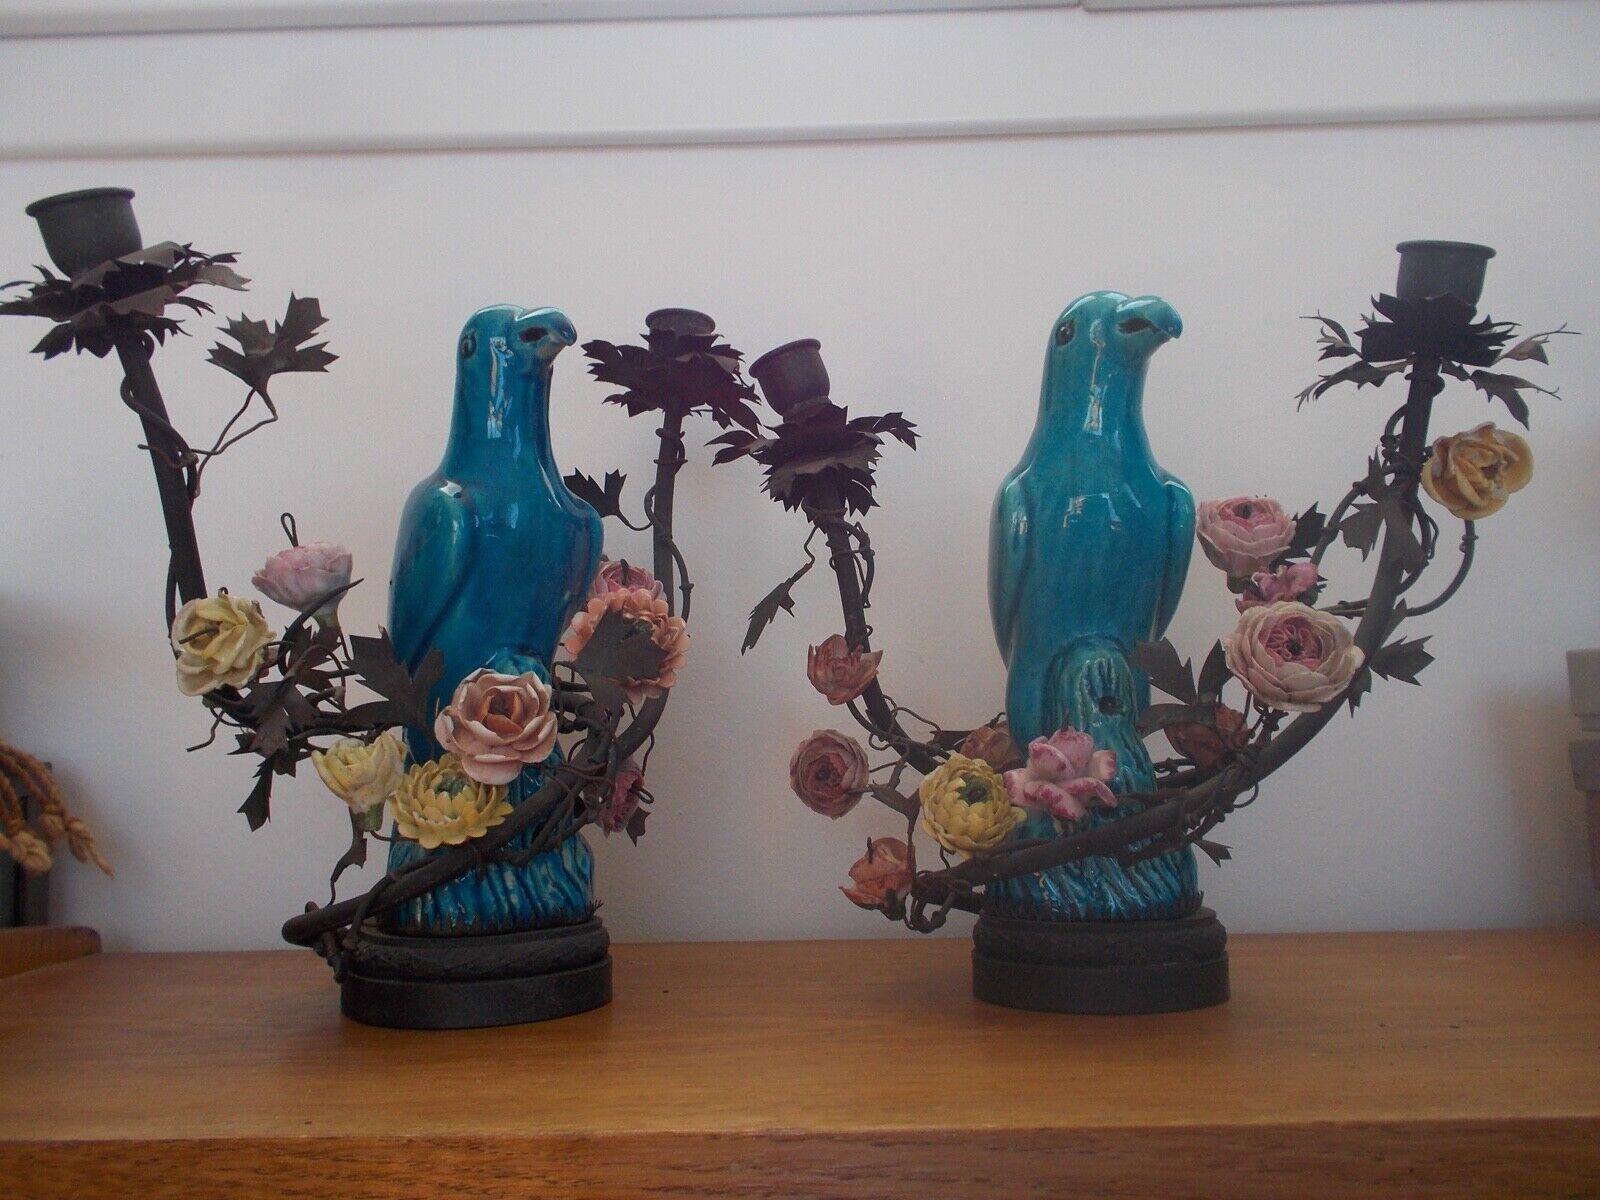 Très rare paire de lampes de table de style rococo français du début du 19ème siècle, perroquets en bleu de Chine parmi des fleurs en porcelaine de Saxe sur des lianes en bronze et une base en bronze. Ils étaient à l'origine destinés aux bougies,